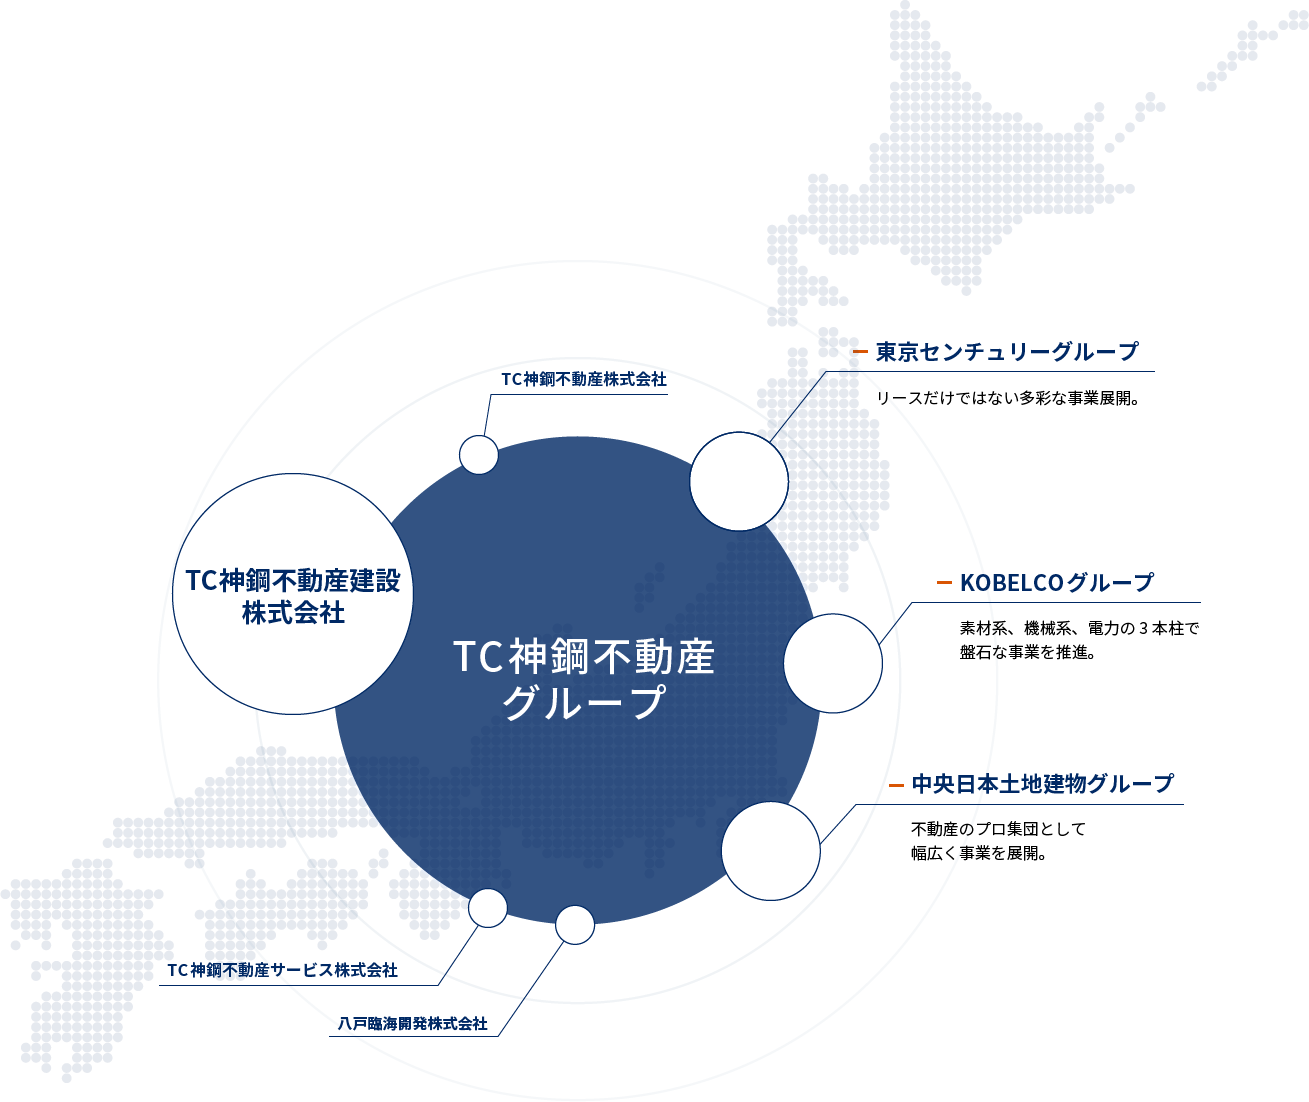 [東京センチュリーグループ]リースだけではない多彩な事業展開。[KOBELCOグループ]素材系、機械系、電力の 3本柱で盤石な事業を推進。[中央日本土地建物グループ]不動産のプロ集団として幅広く事業を展開。